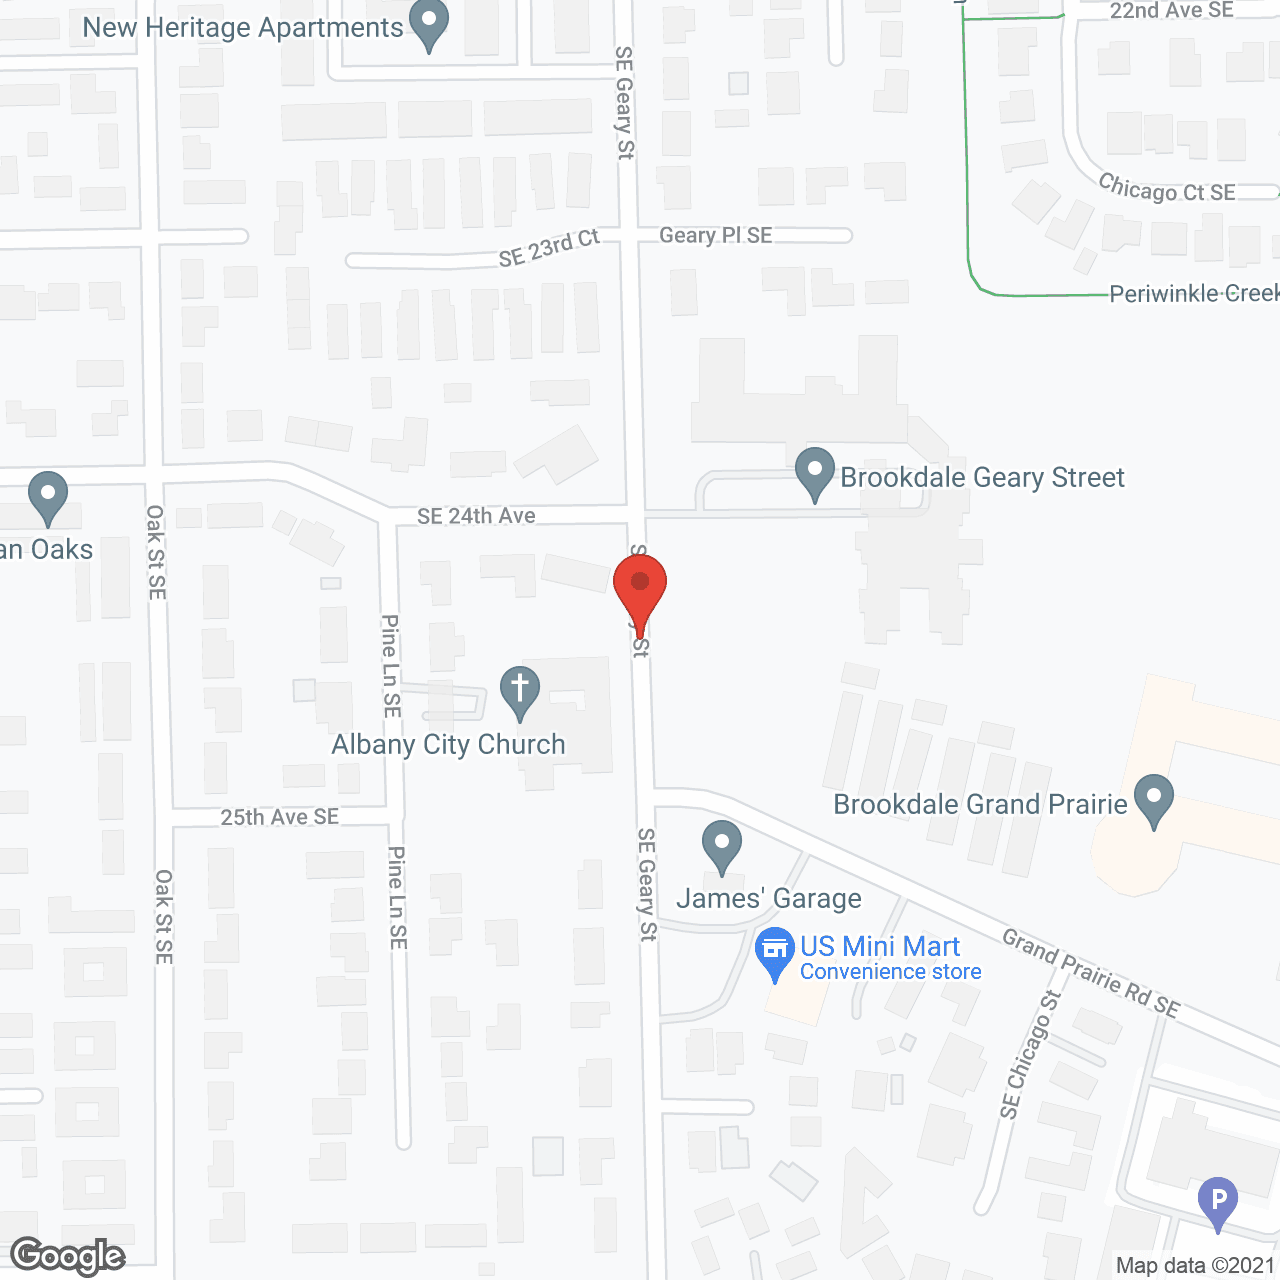 Brookdale Geary Street in google map